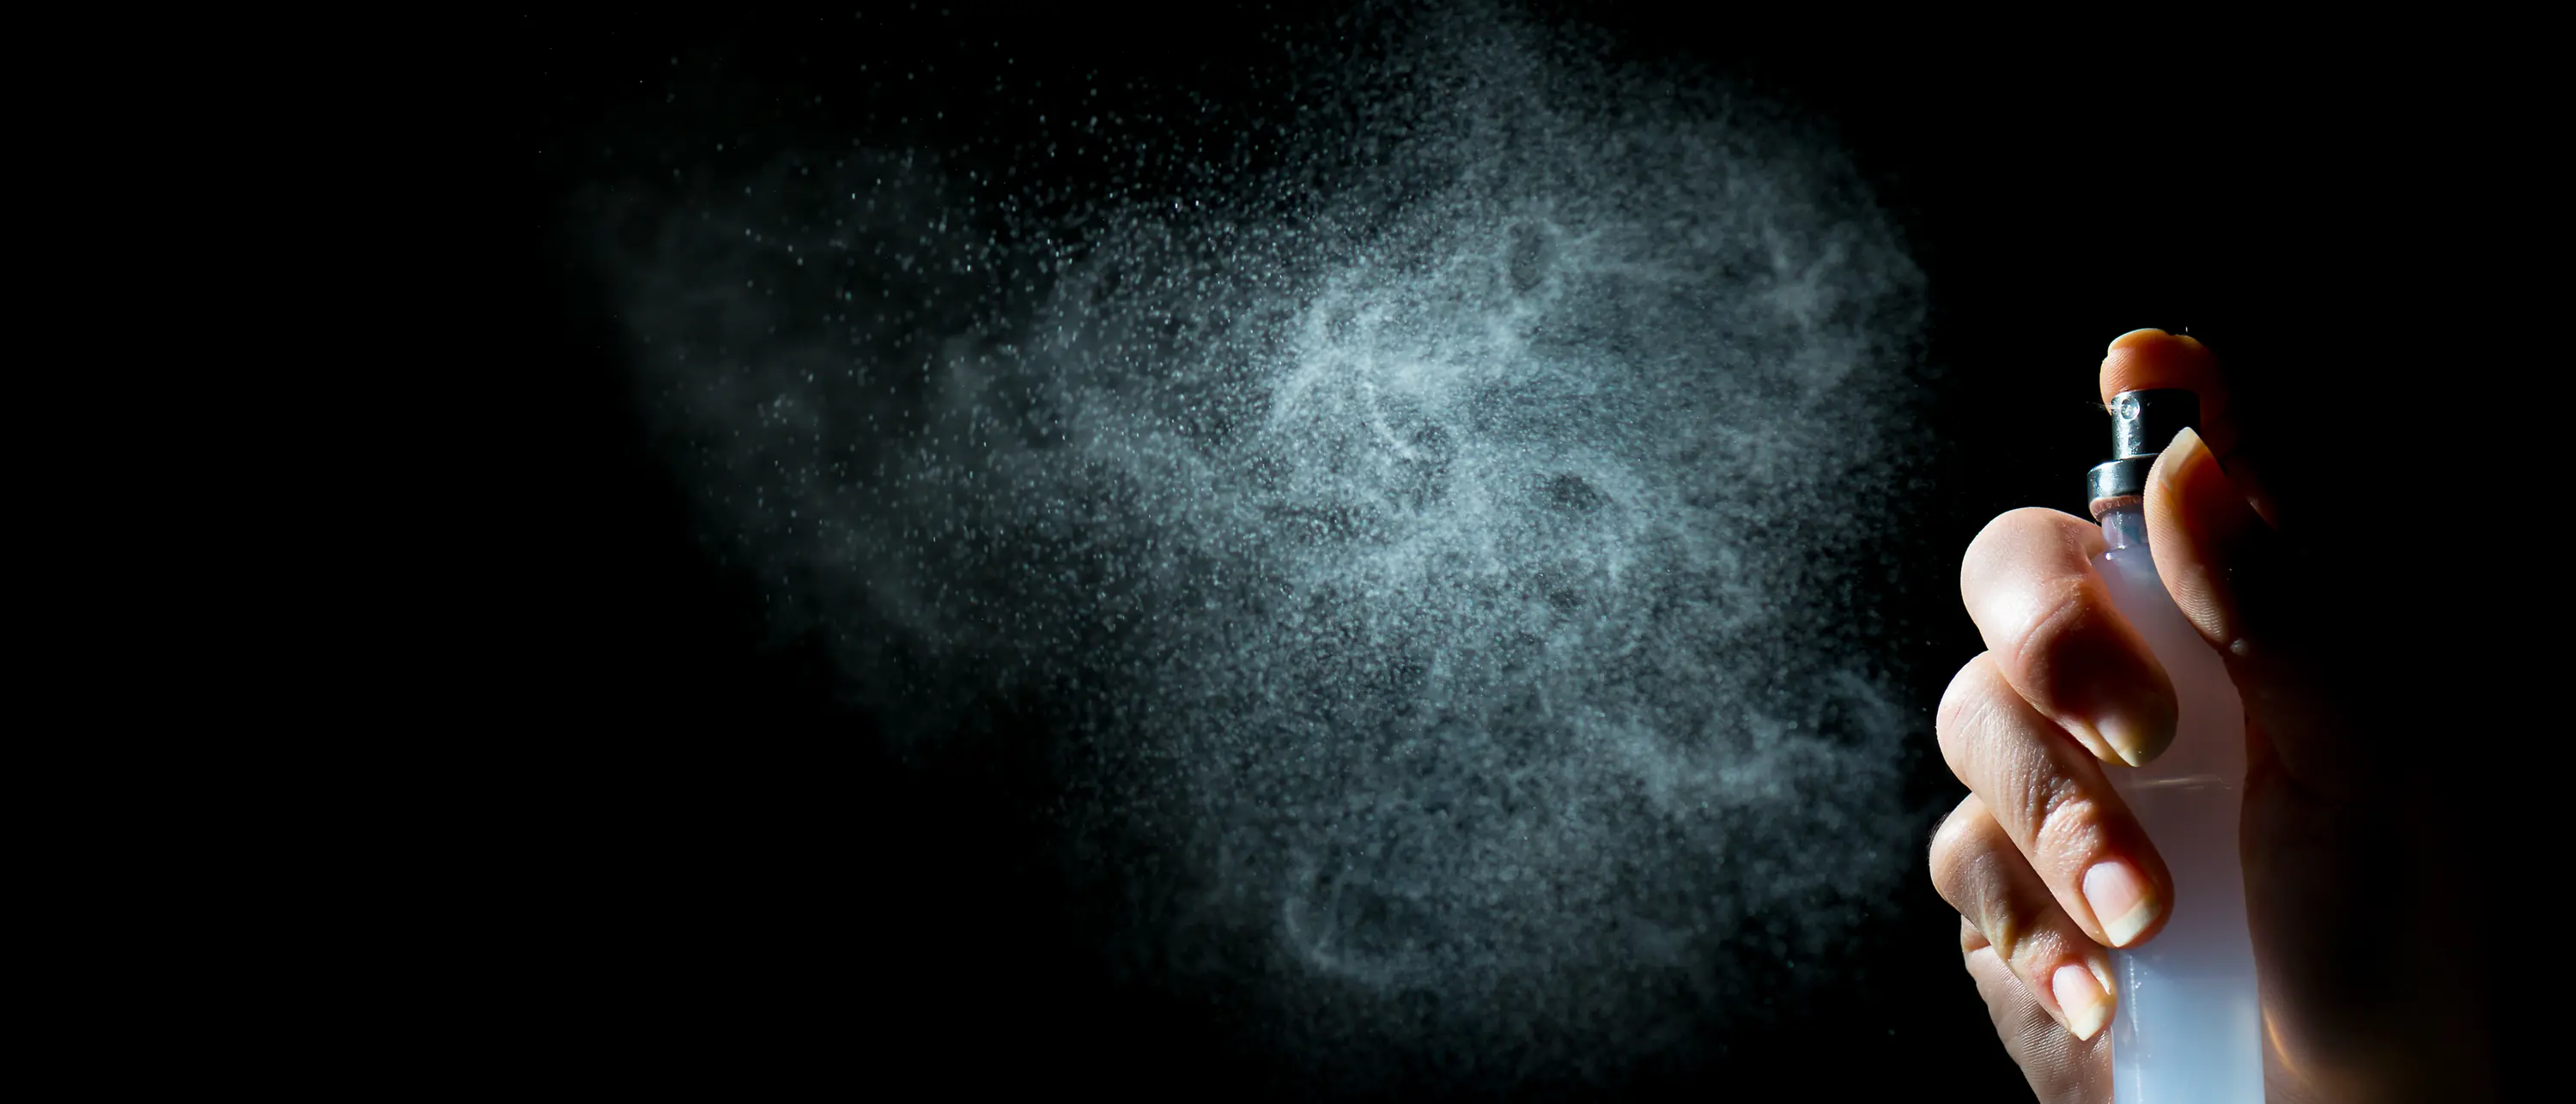 Hand with pump spray, white mist on black background